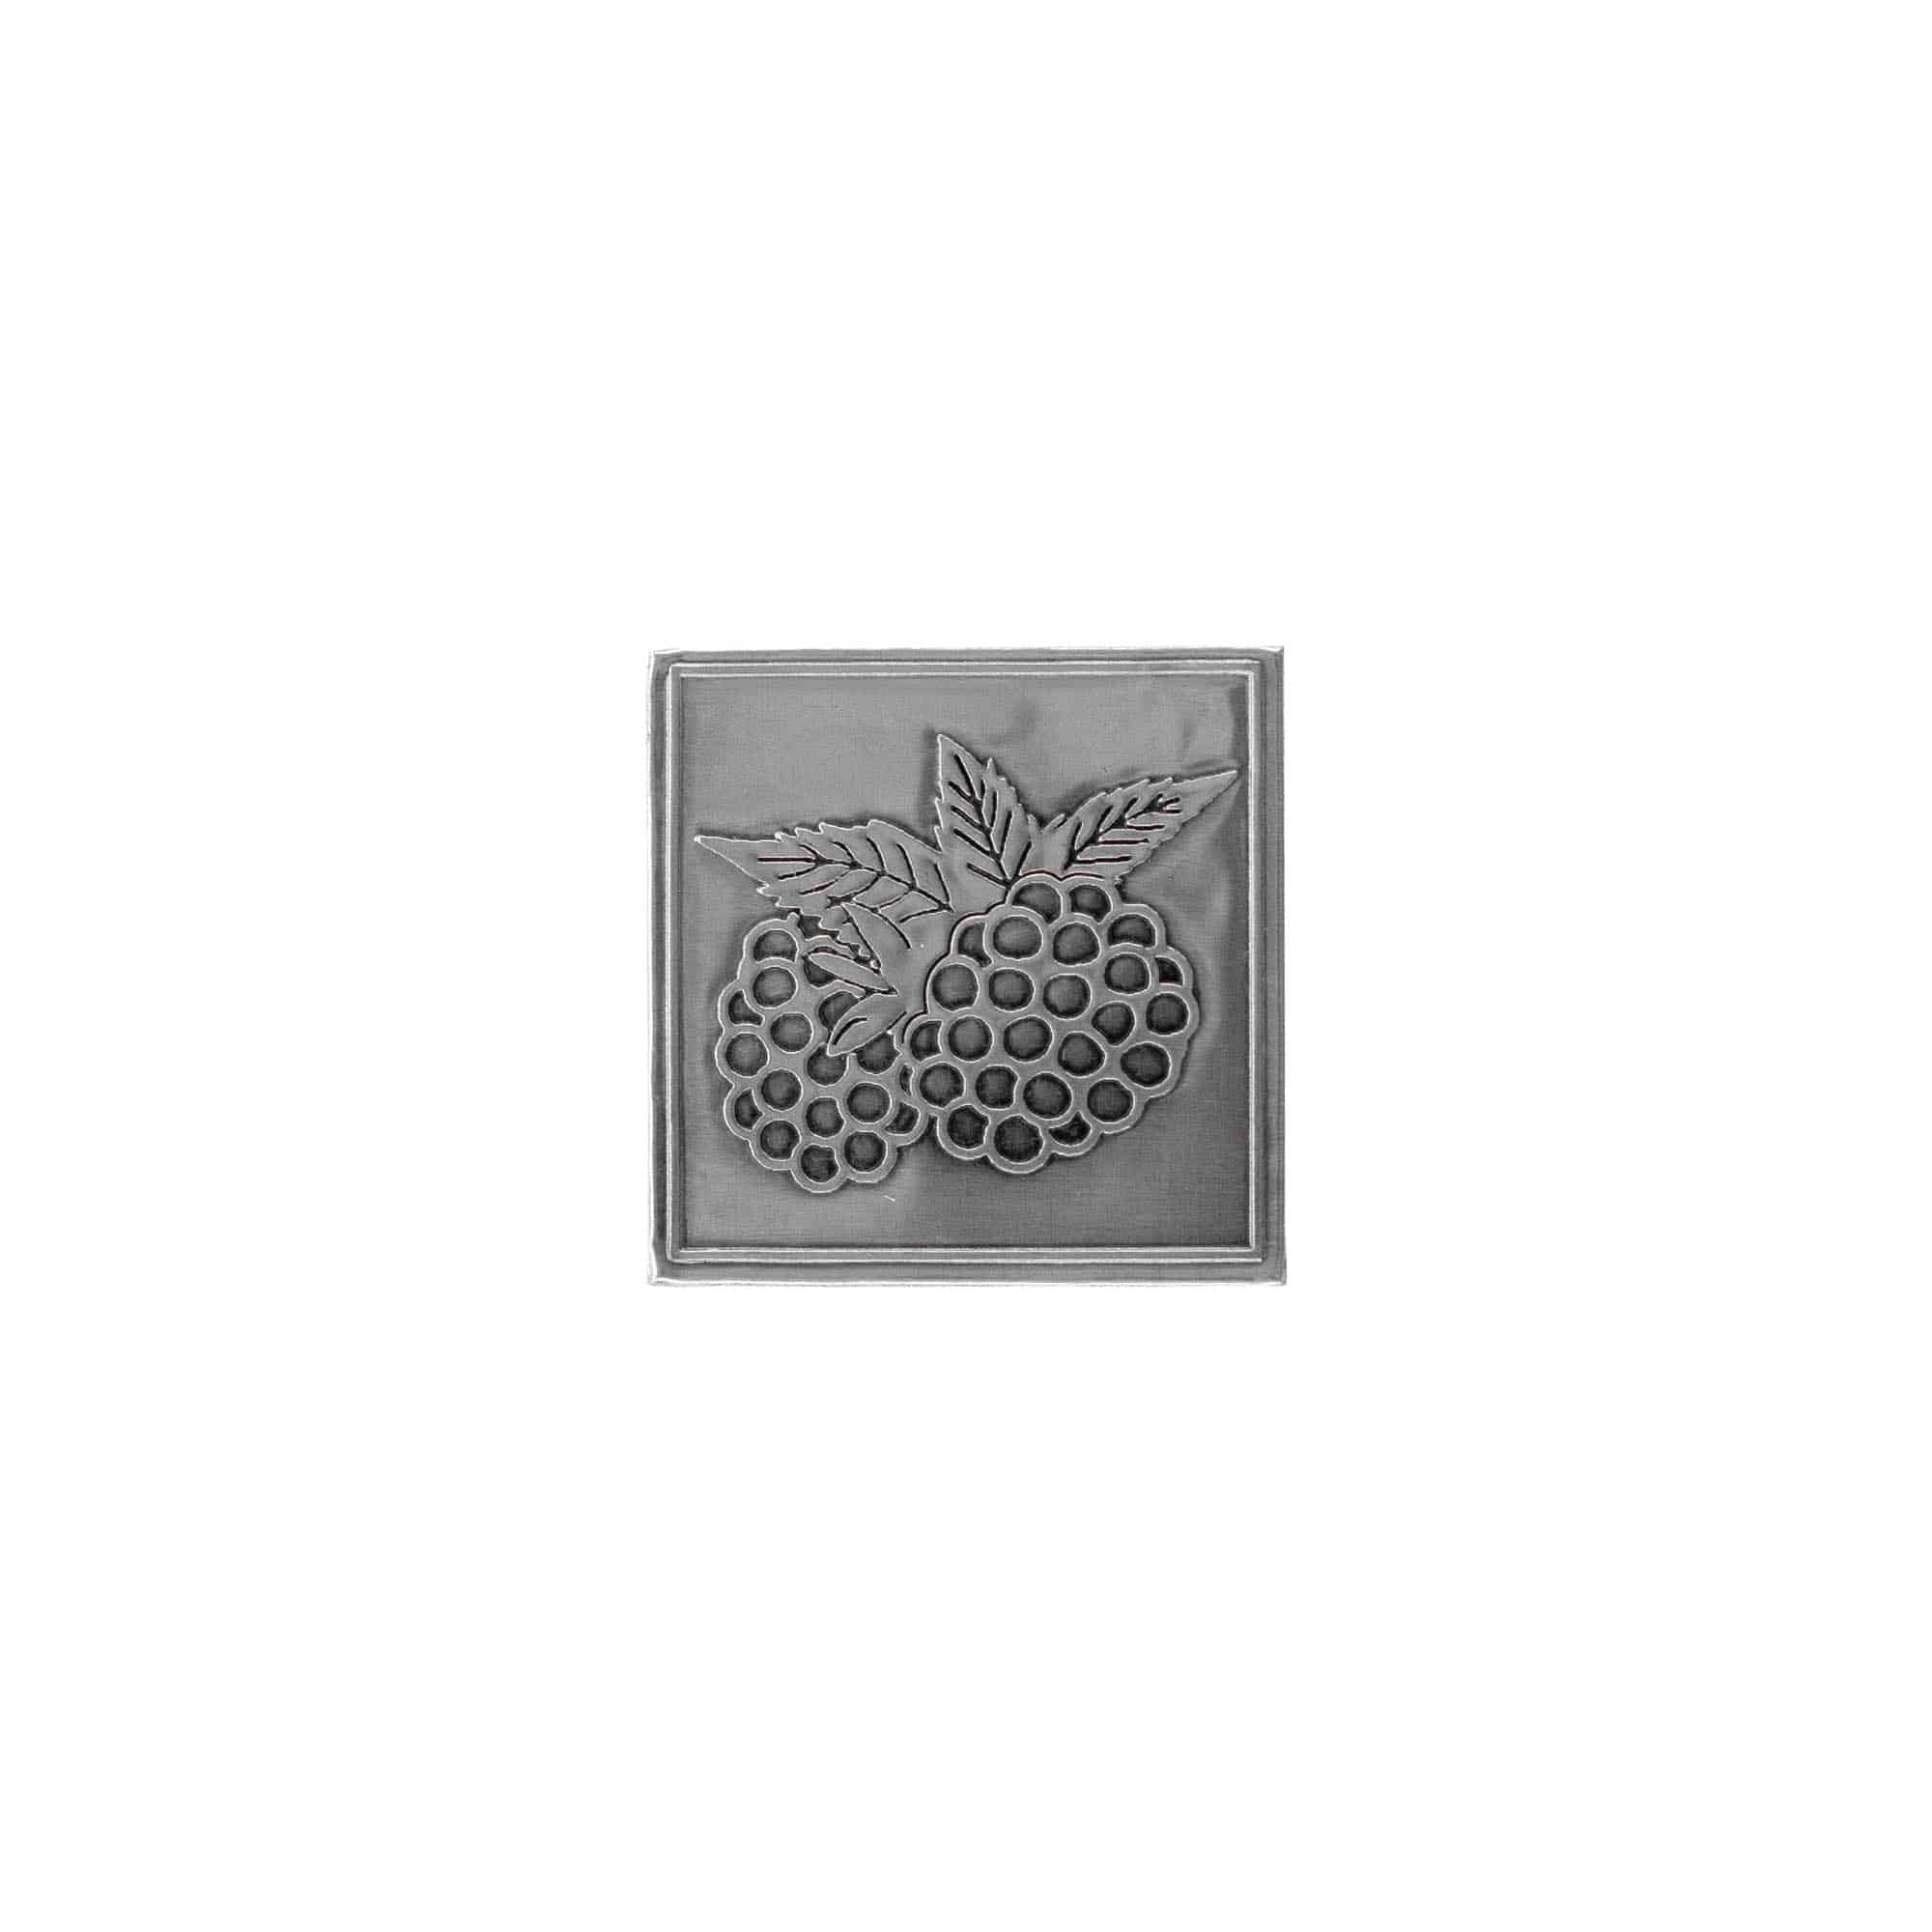 Etykieta cynowa 'Jeżyna', kwadratowa, metal, kolor srebrny